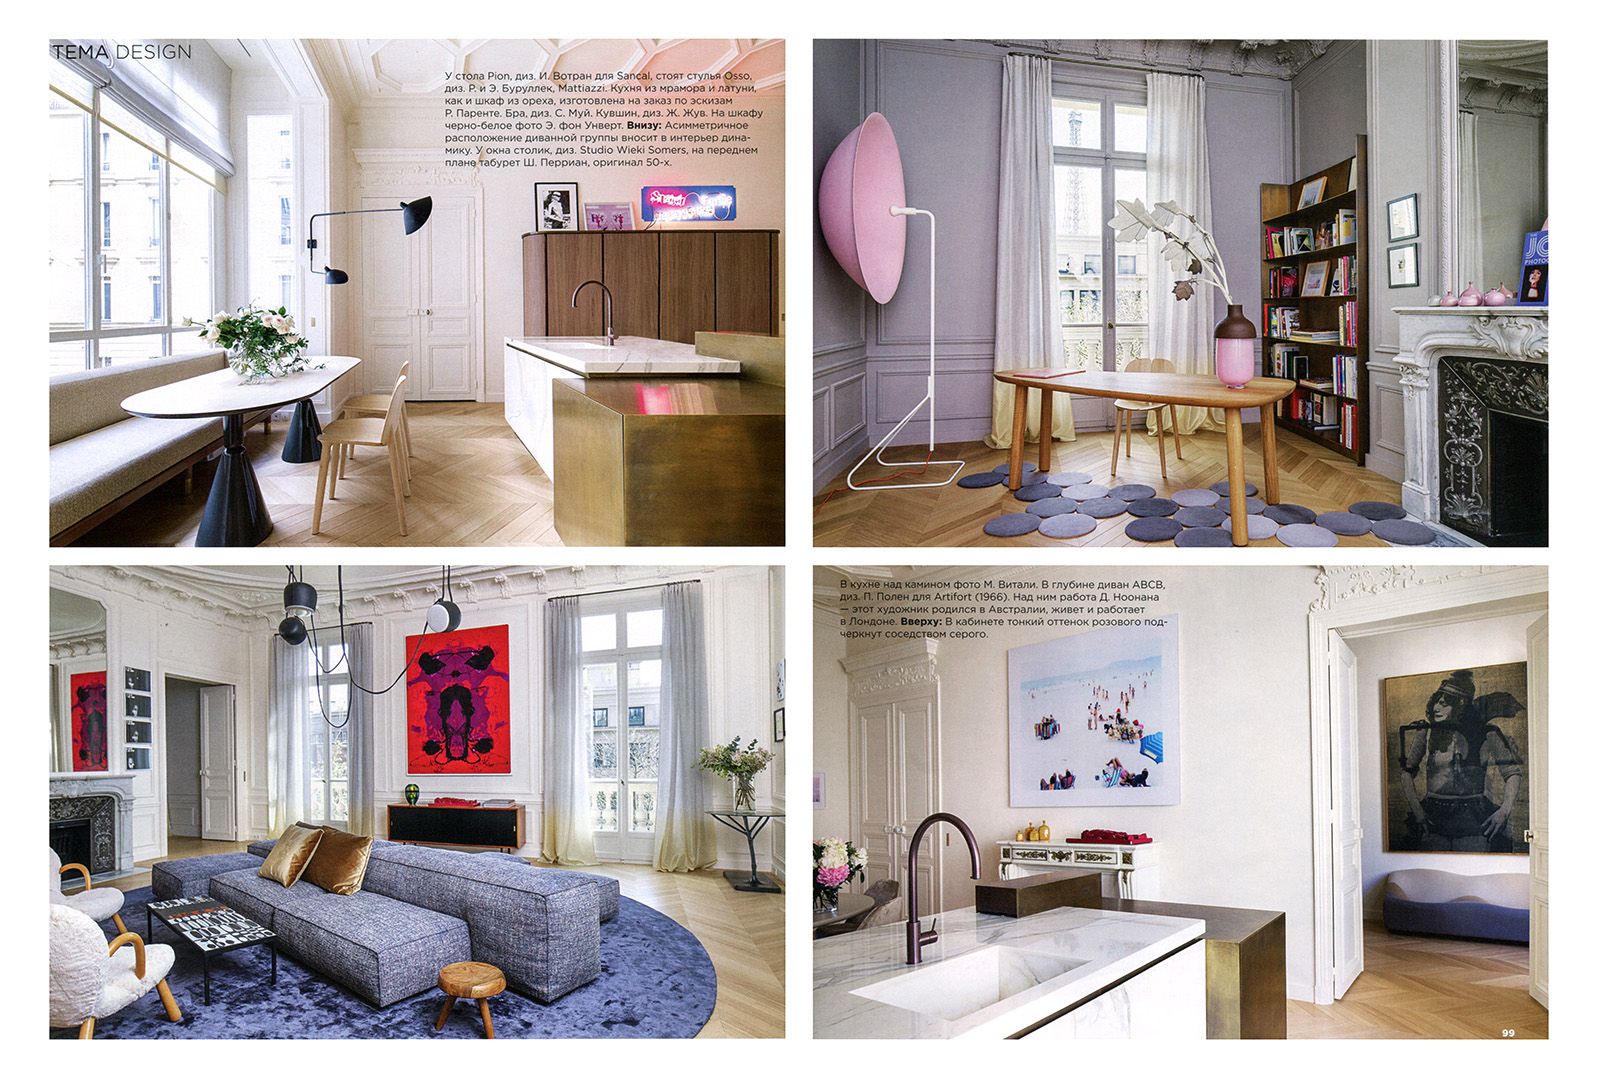 Rodolphe-Parente-Interior-Design-Magazine-2015-05